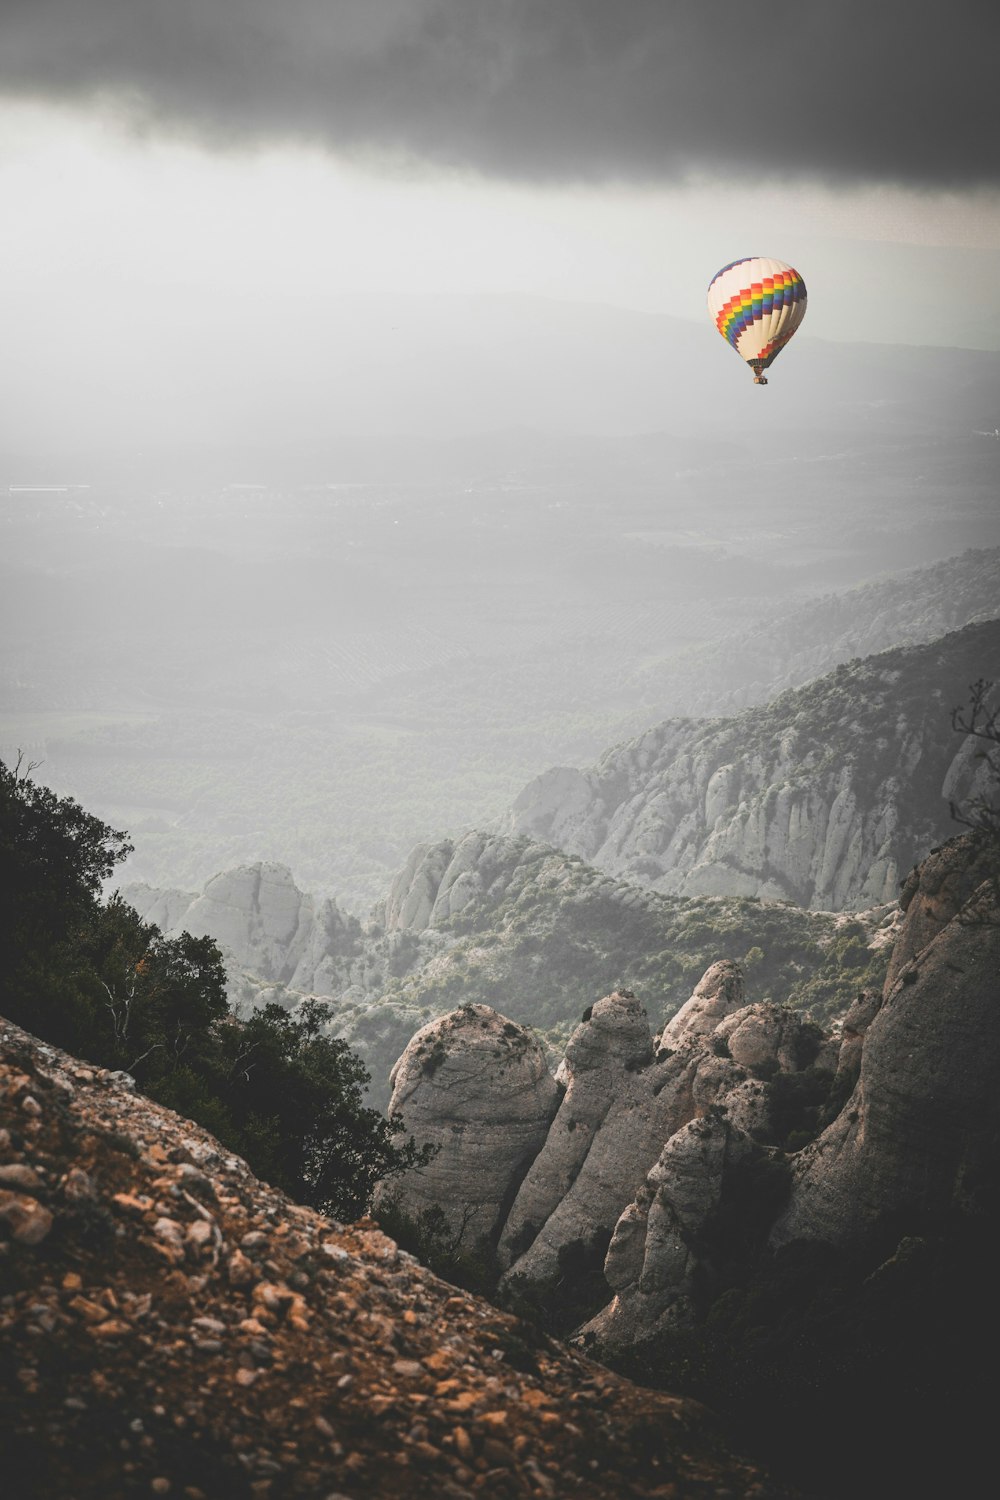 Bunter Heißluftballon in der Nähe von Bergen